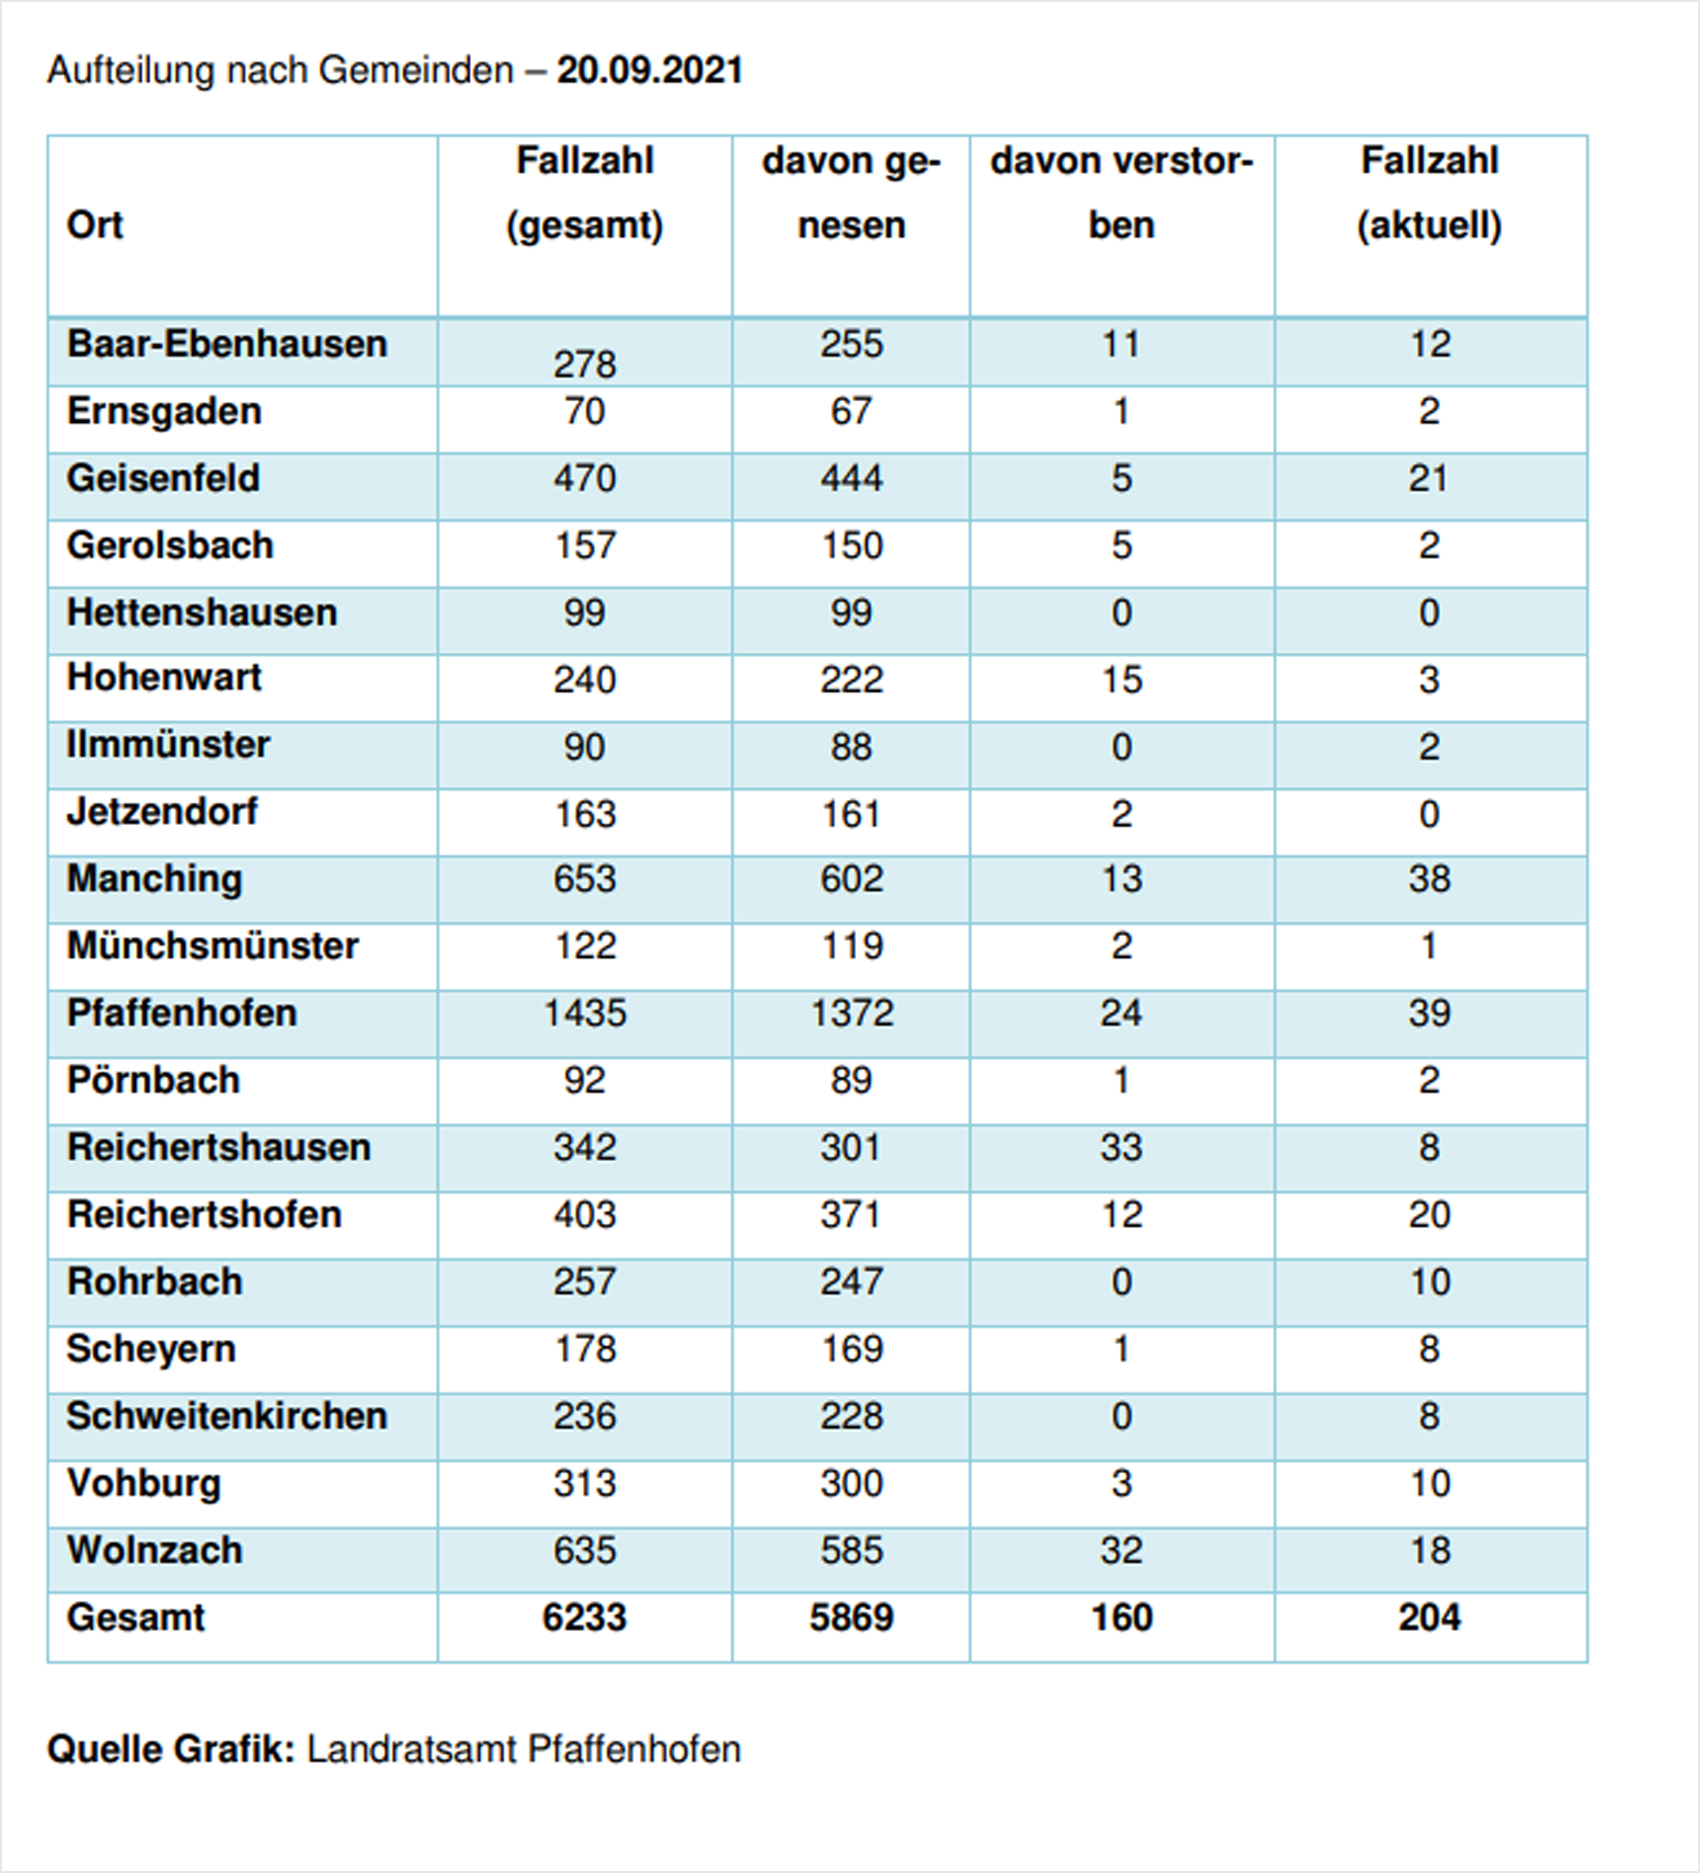 Verteilung der Fallzahlen auf die Landkreisgemeinden - 20.09.2021